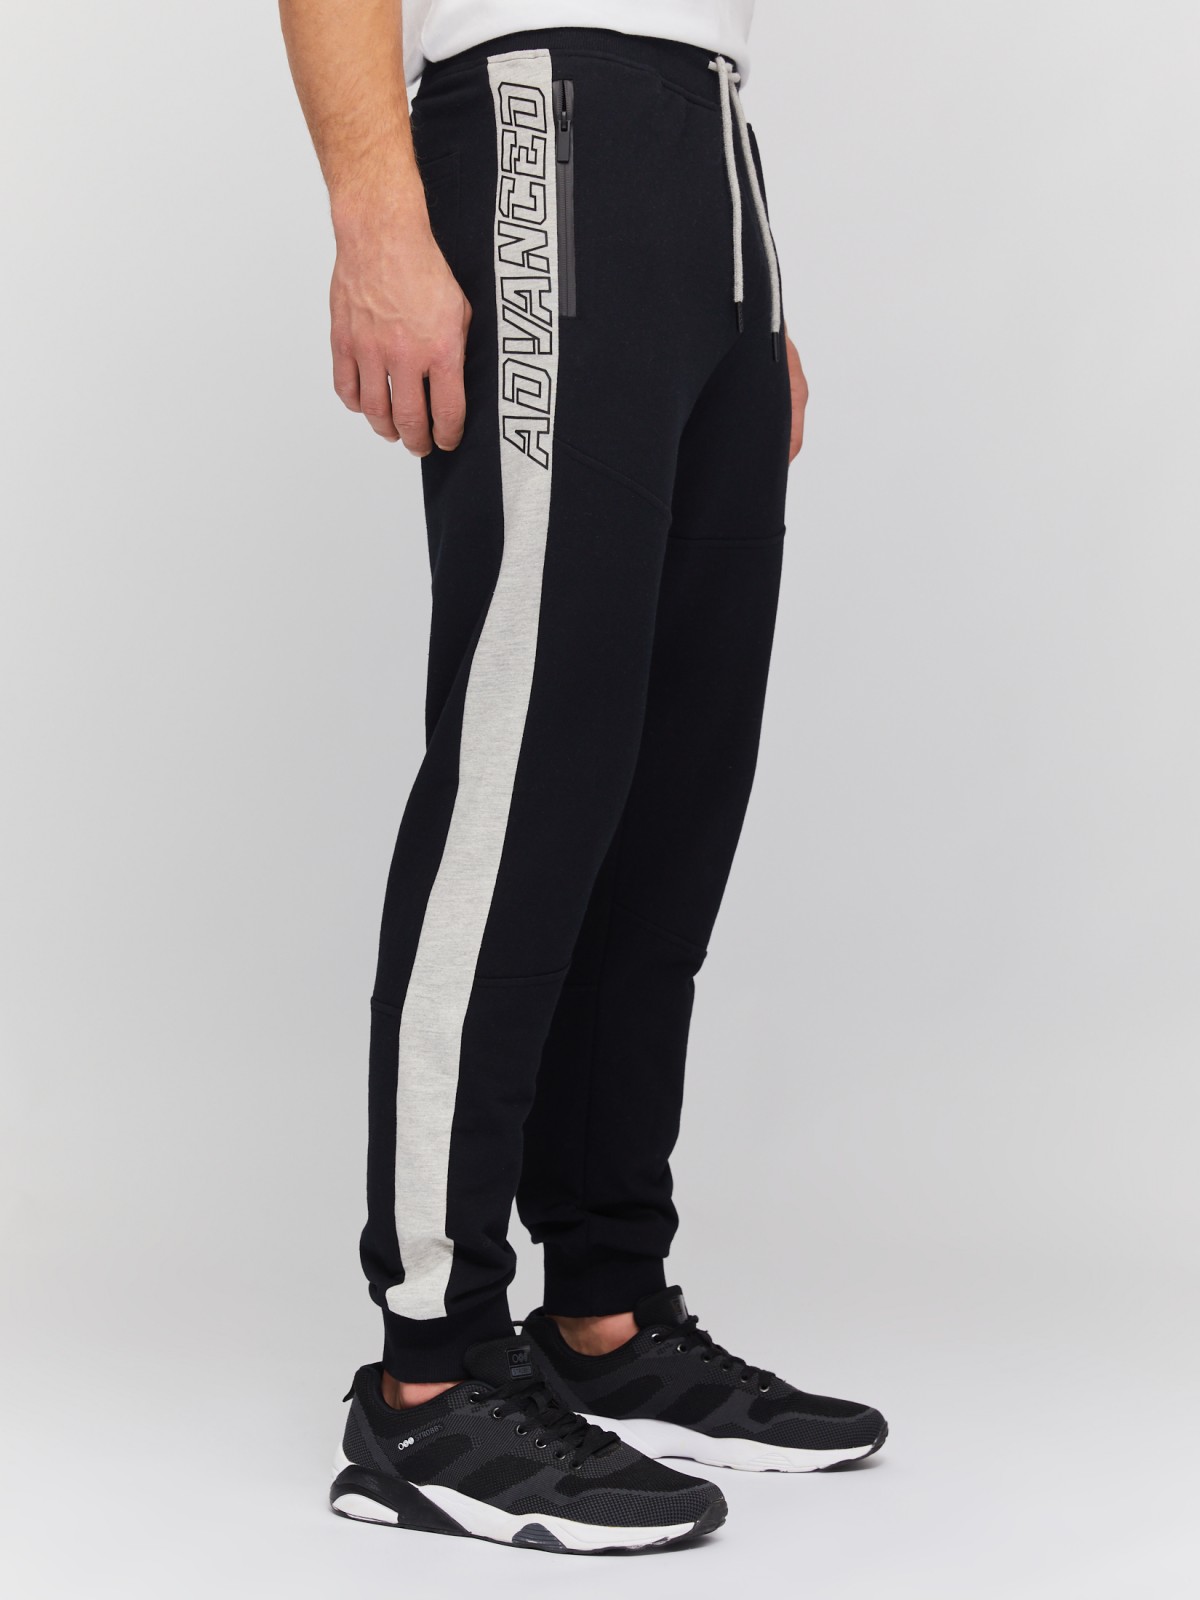 Трикотажные брюки-джоггеры с лампасами zolla 014137660061, цвет черный, размер S - фото 3